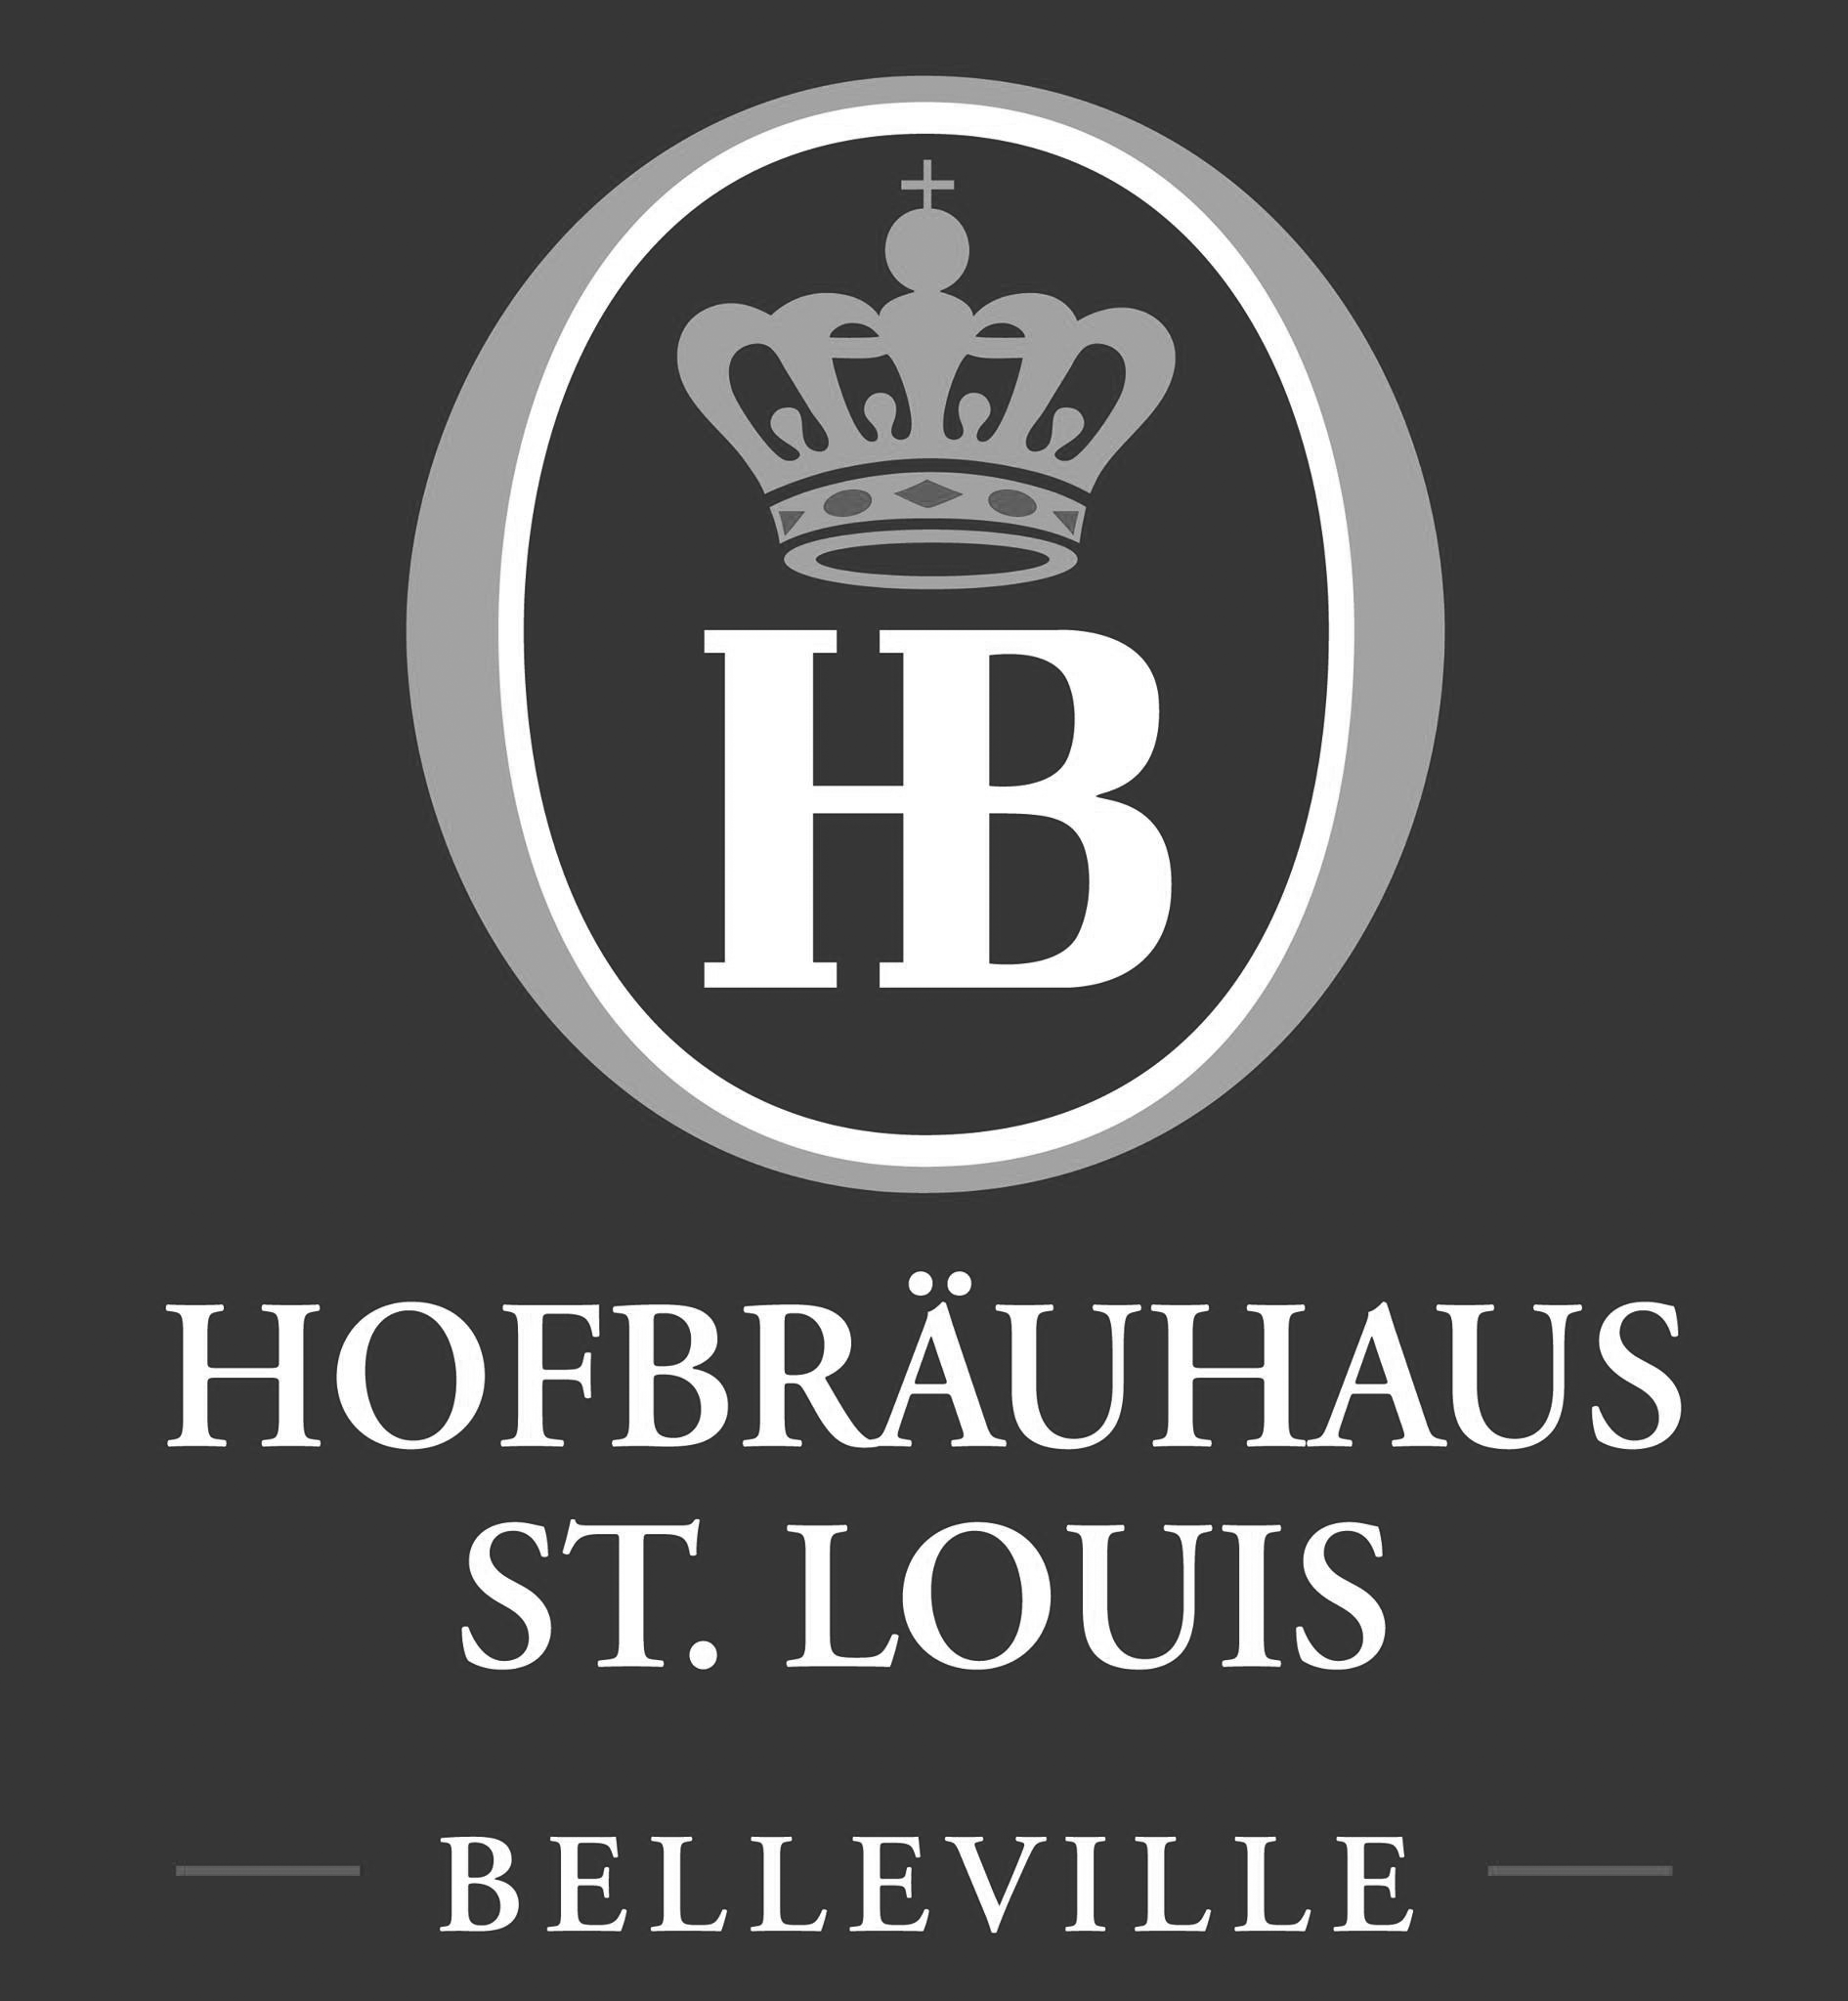 Hofbräuhaus St. Louis - Belleville